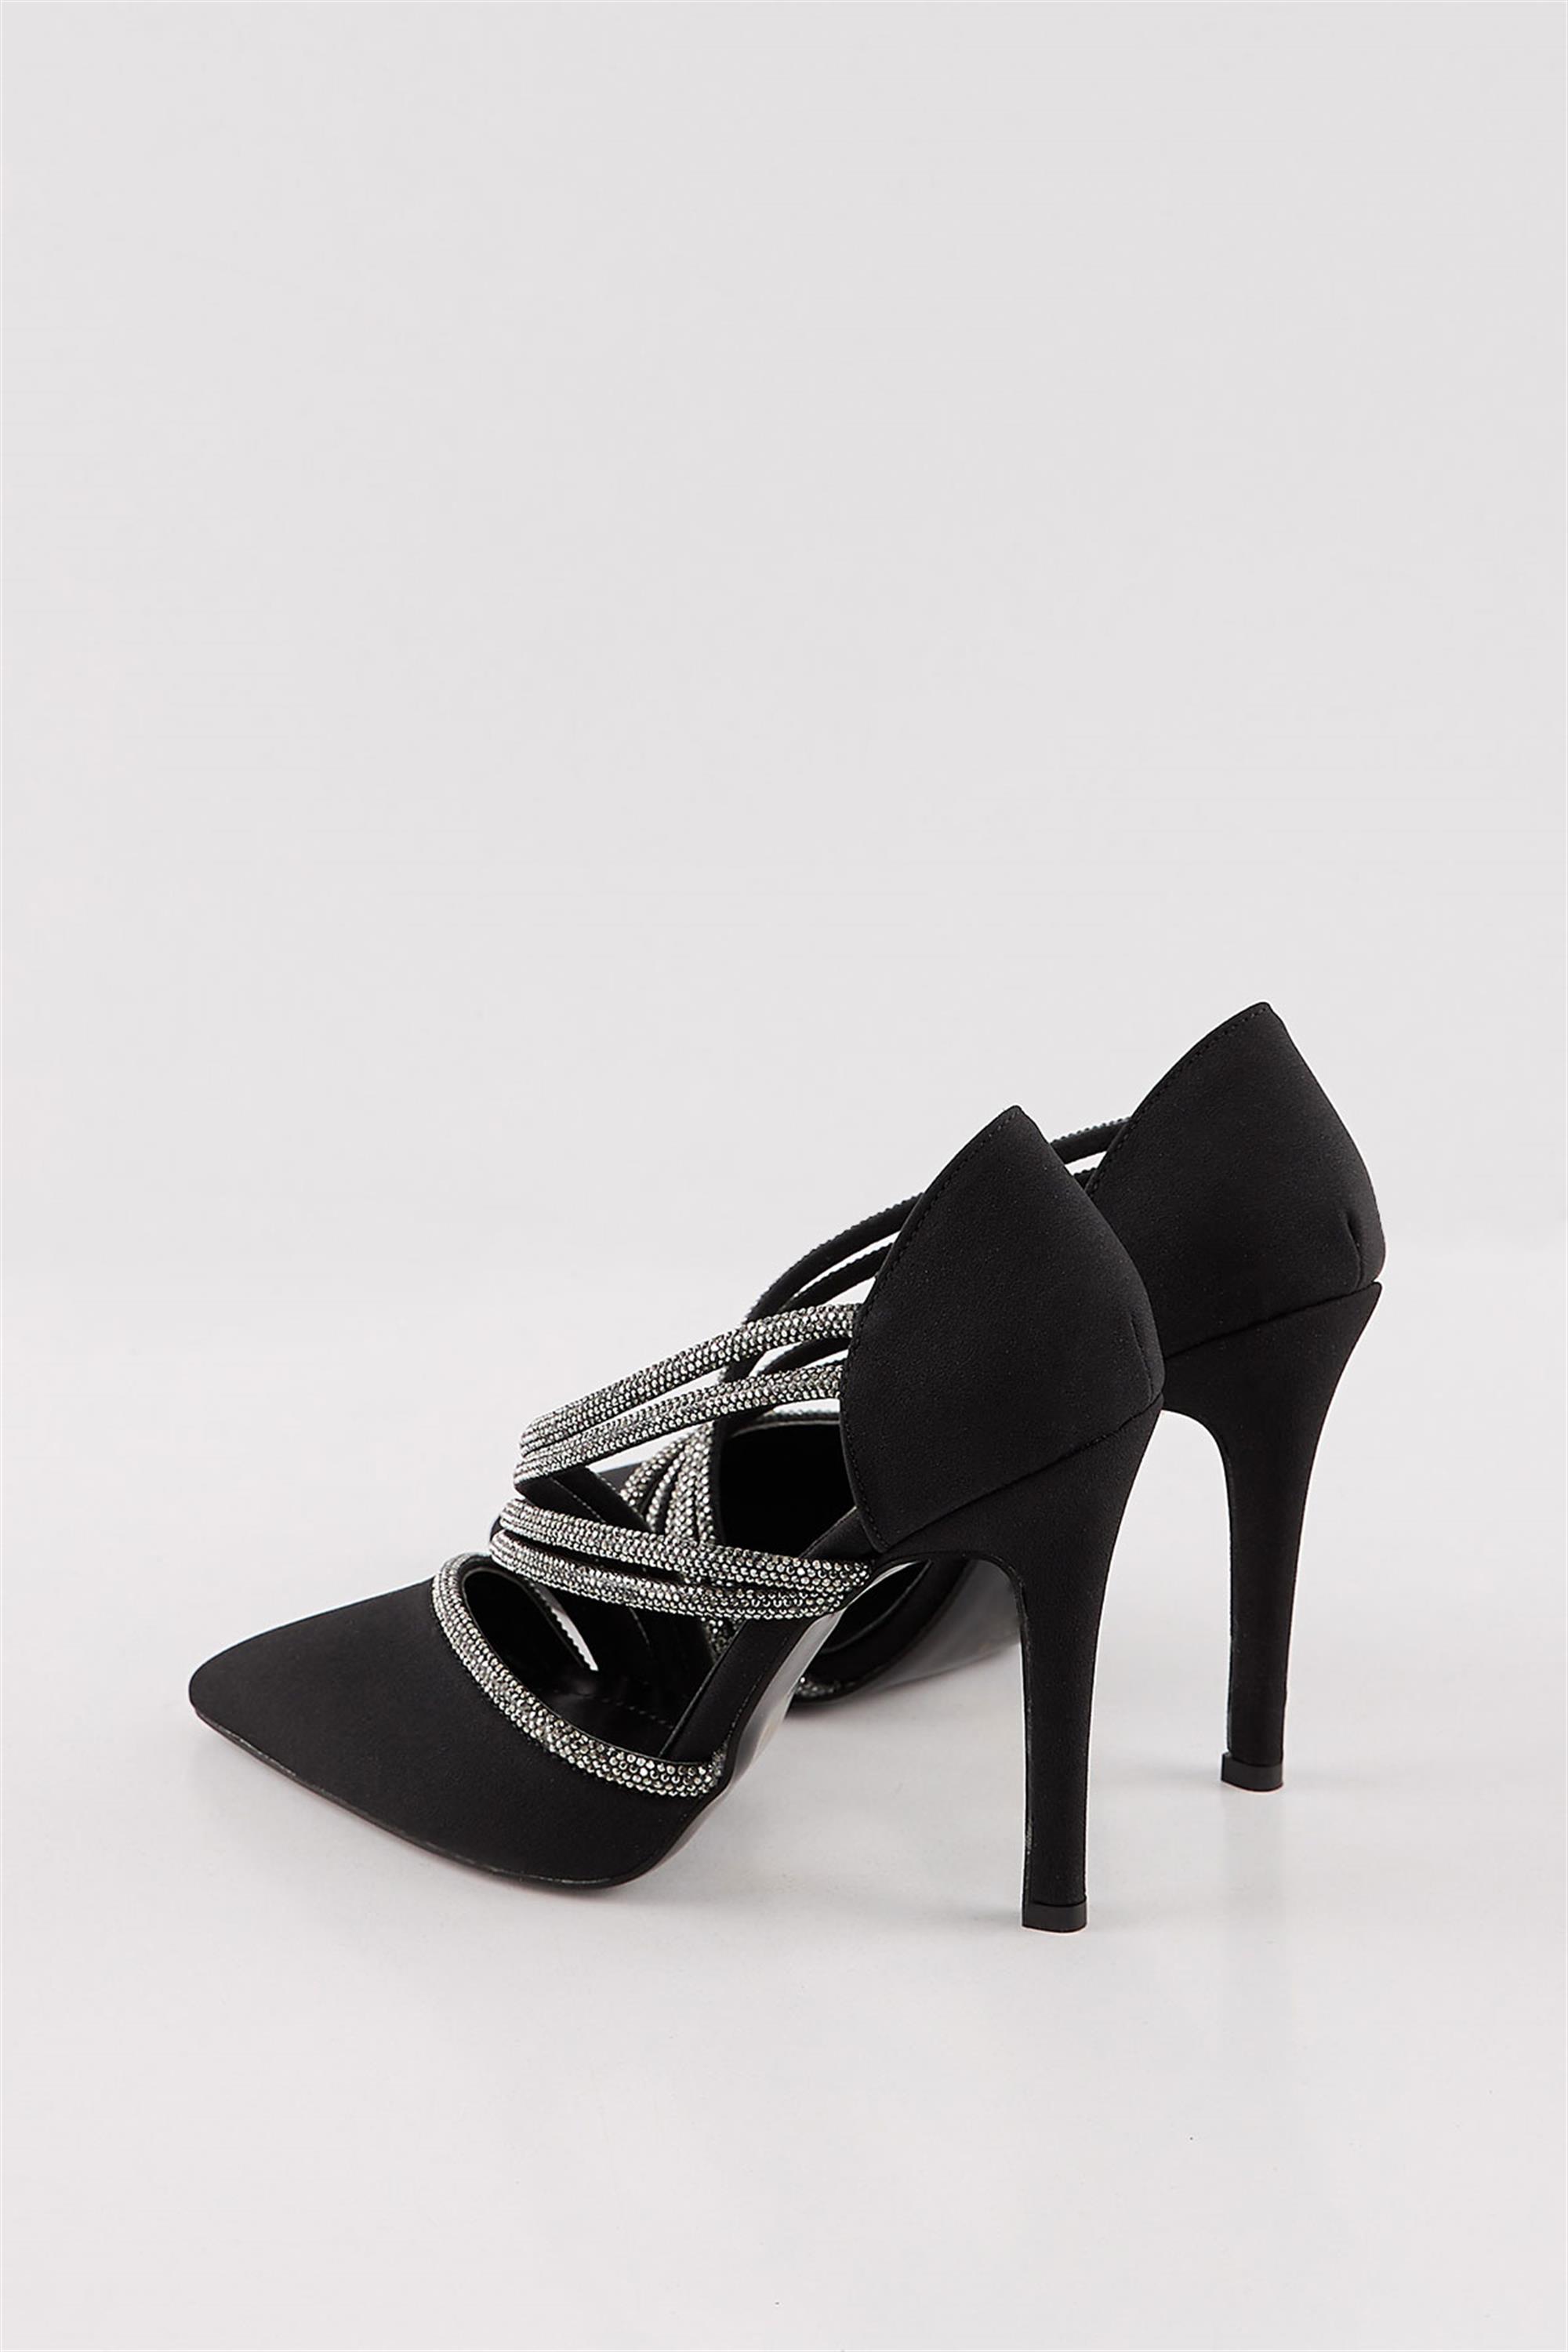 Zabina Siyah Taşlı Kadın Stiletto Ayakkabı 6533